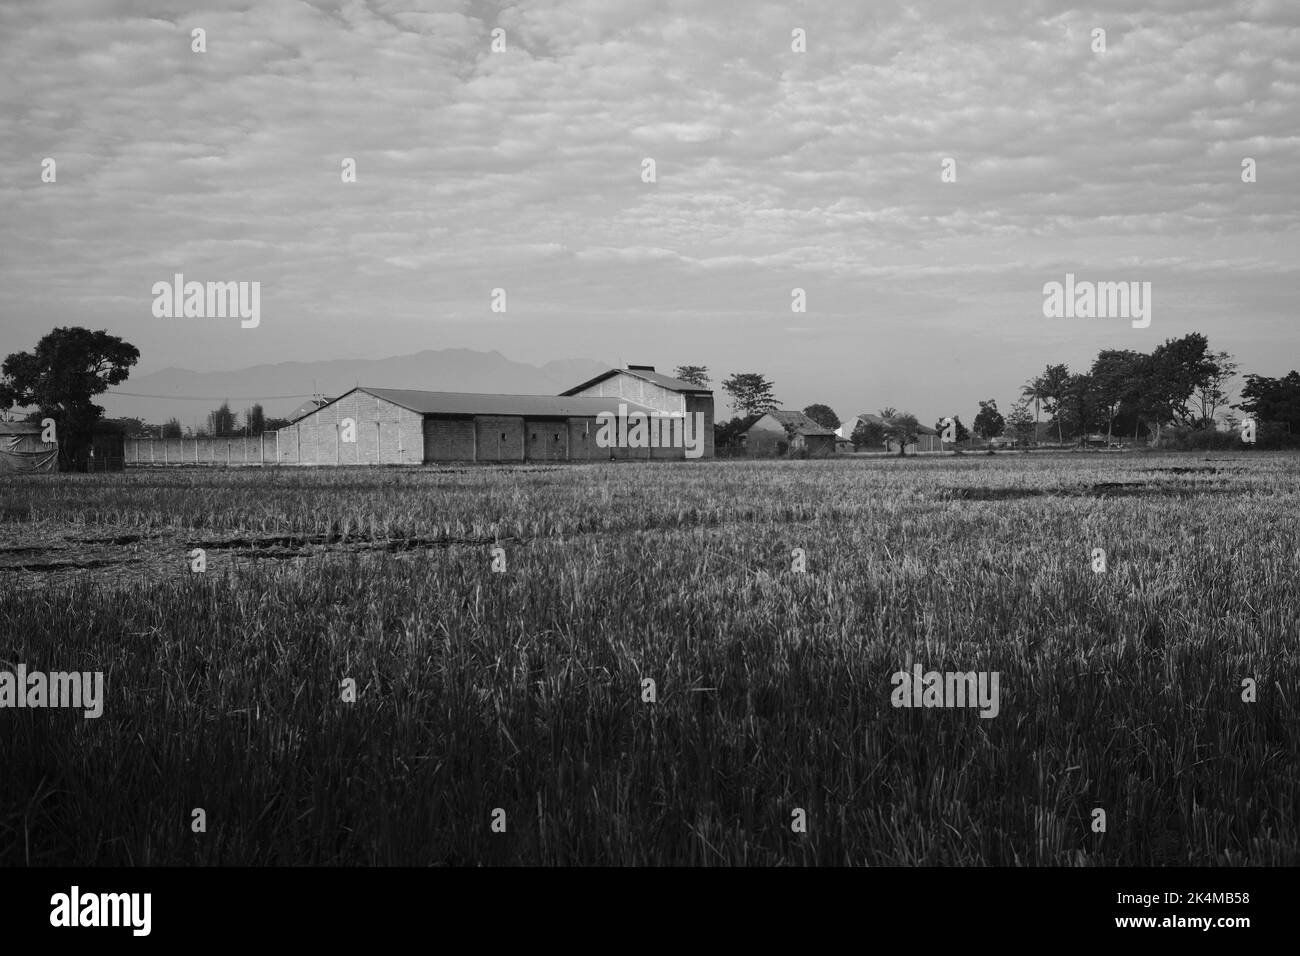 Reislager, Lagerung und Trocknung von Reis, Reisfeld vor, monochromes Foto, im Cikancung-Gebiet - Indonesien Stockfoto